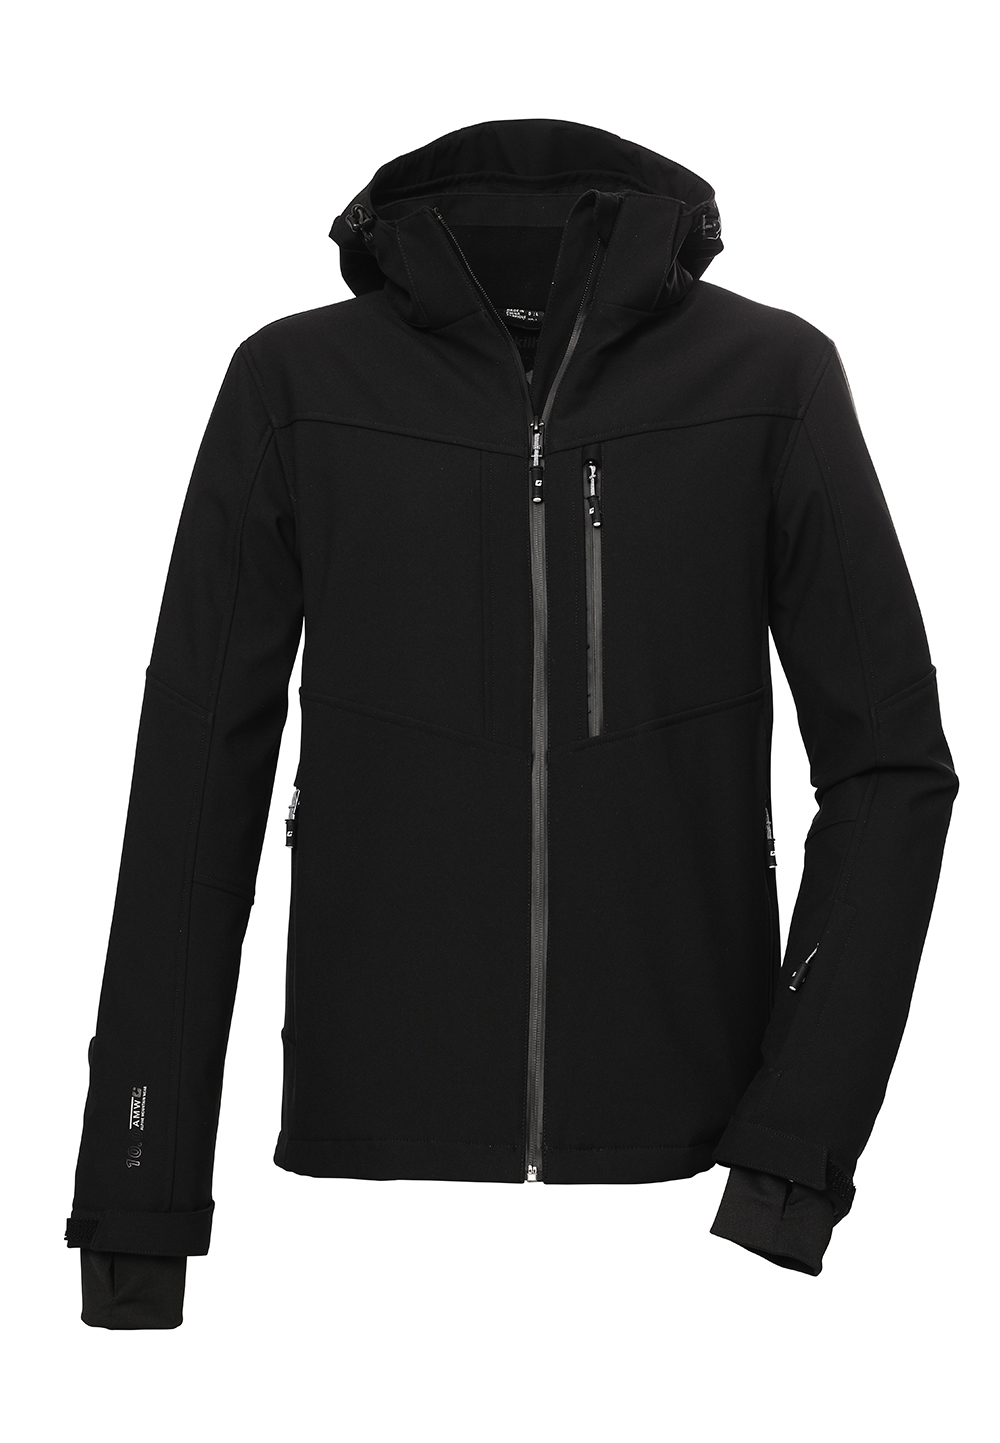 Killtec Herren KSW 112 Softshell Jacke mit Schneefang und abzippbarer Kapuze 41036 schwarz